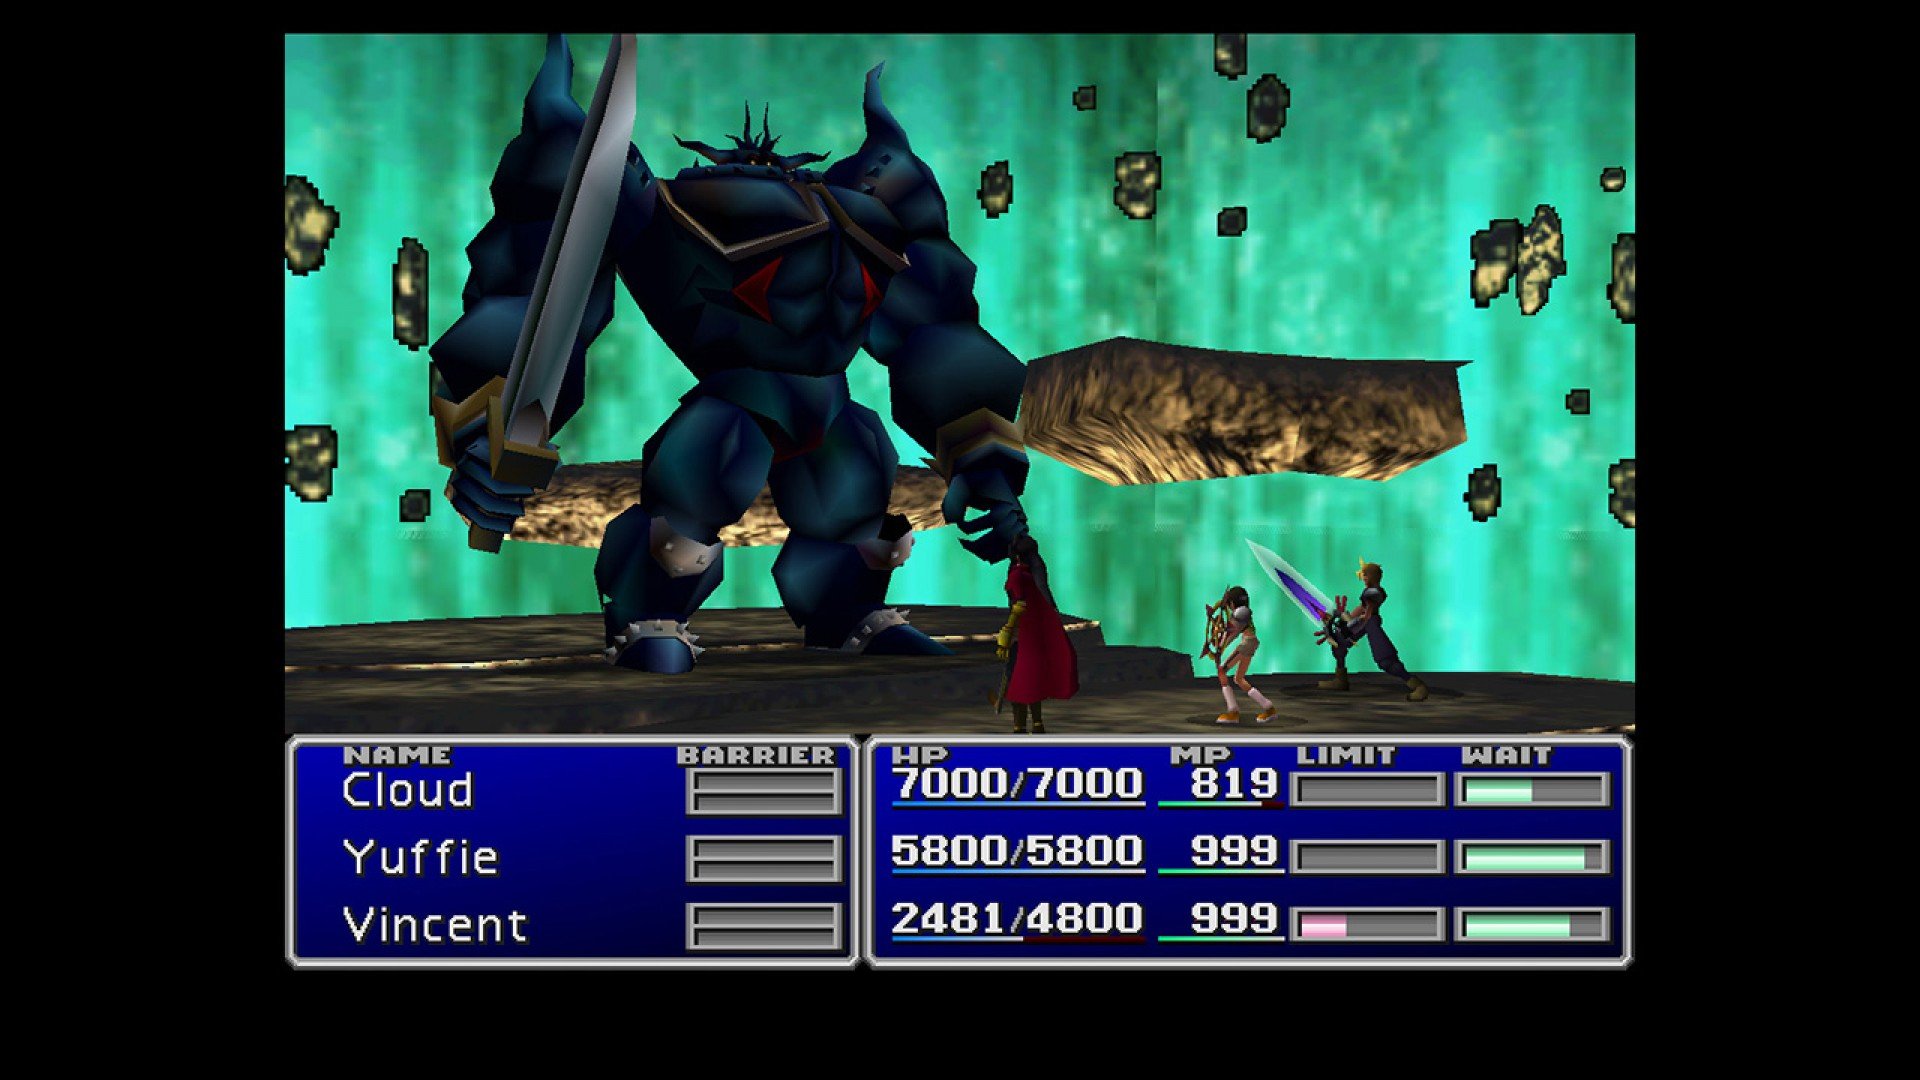 Requisitos de sistema do Final Fantasy 7 Remake